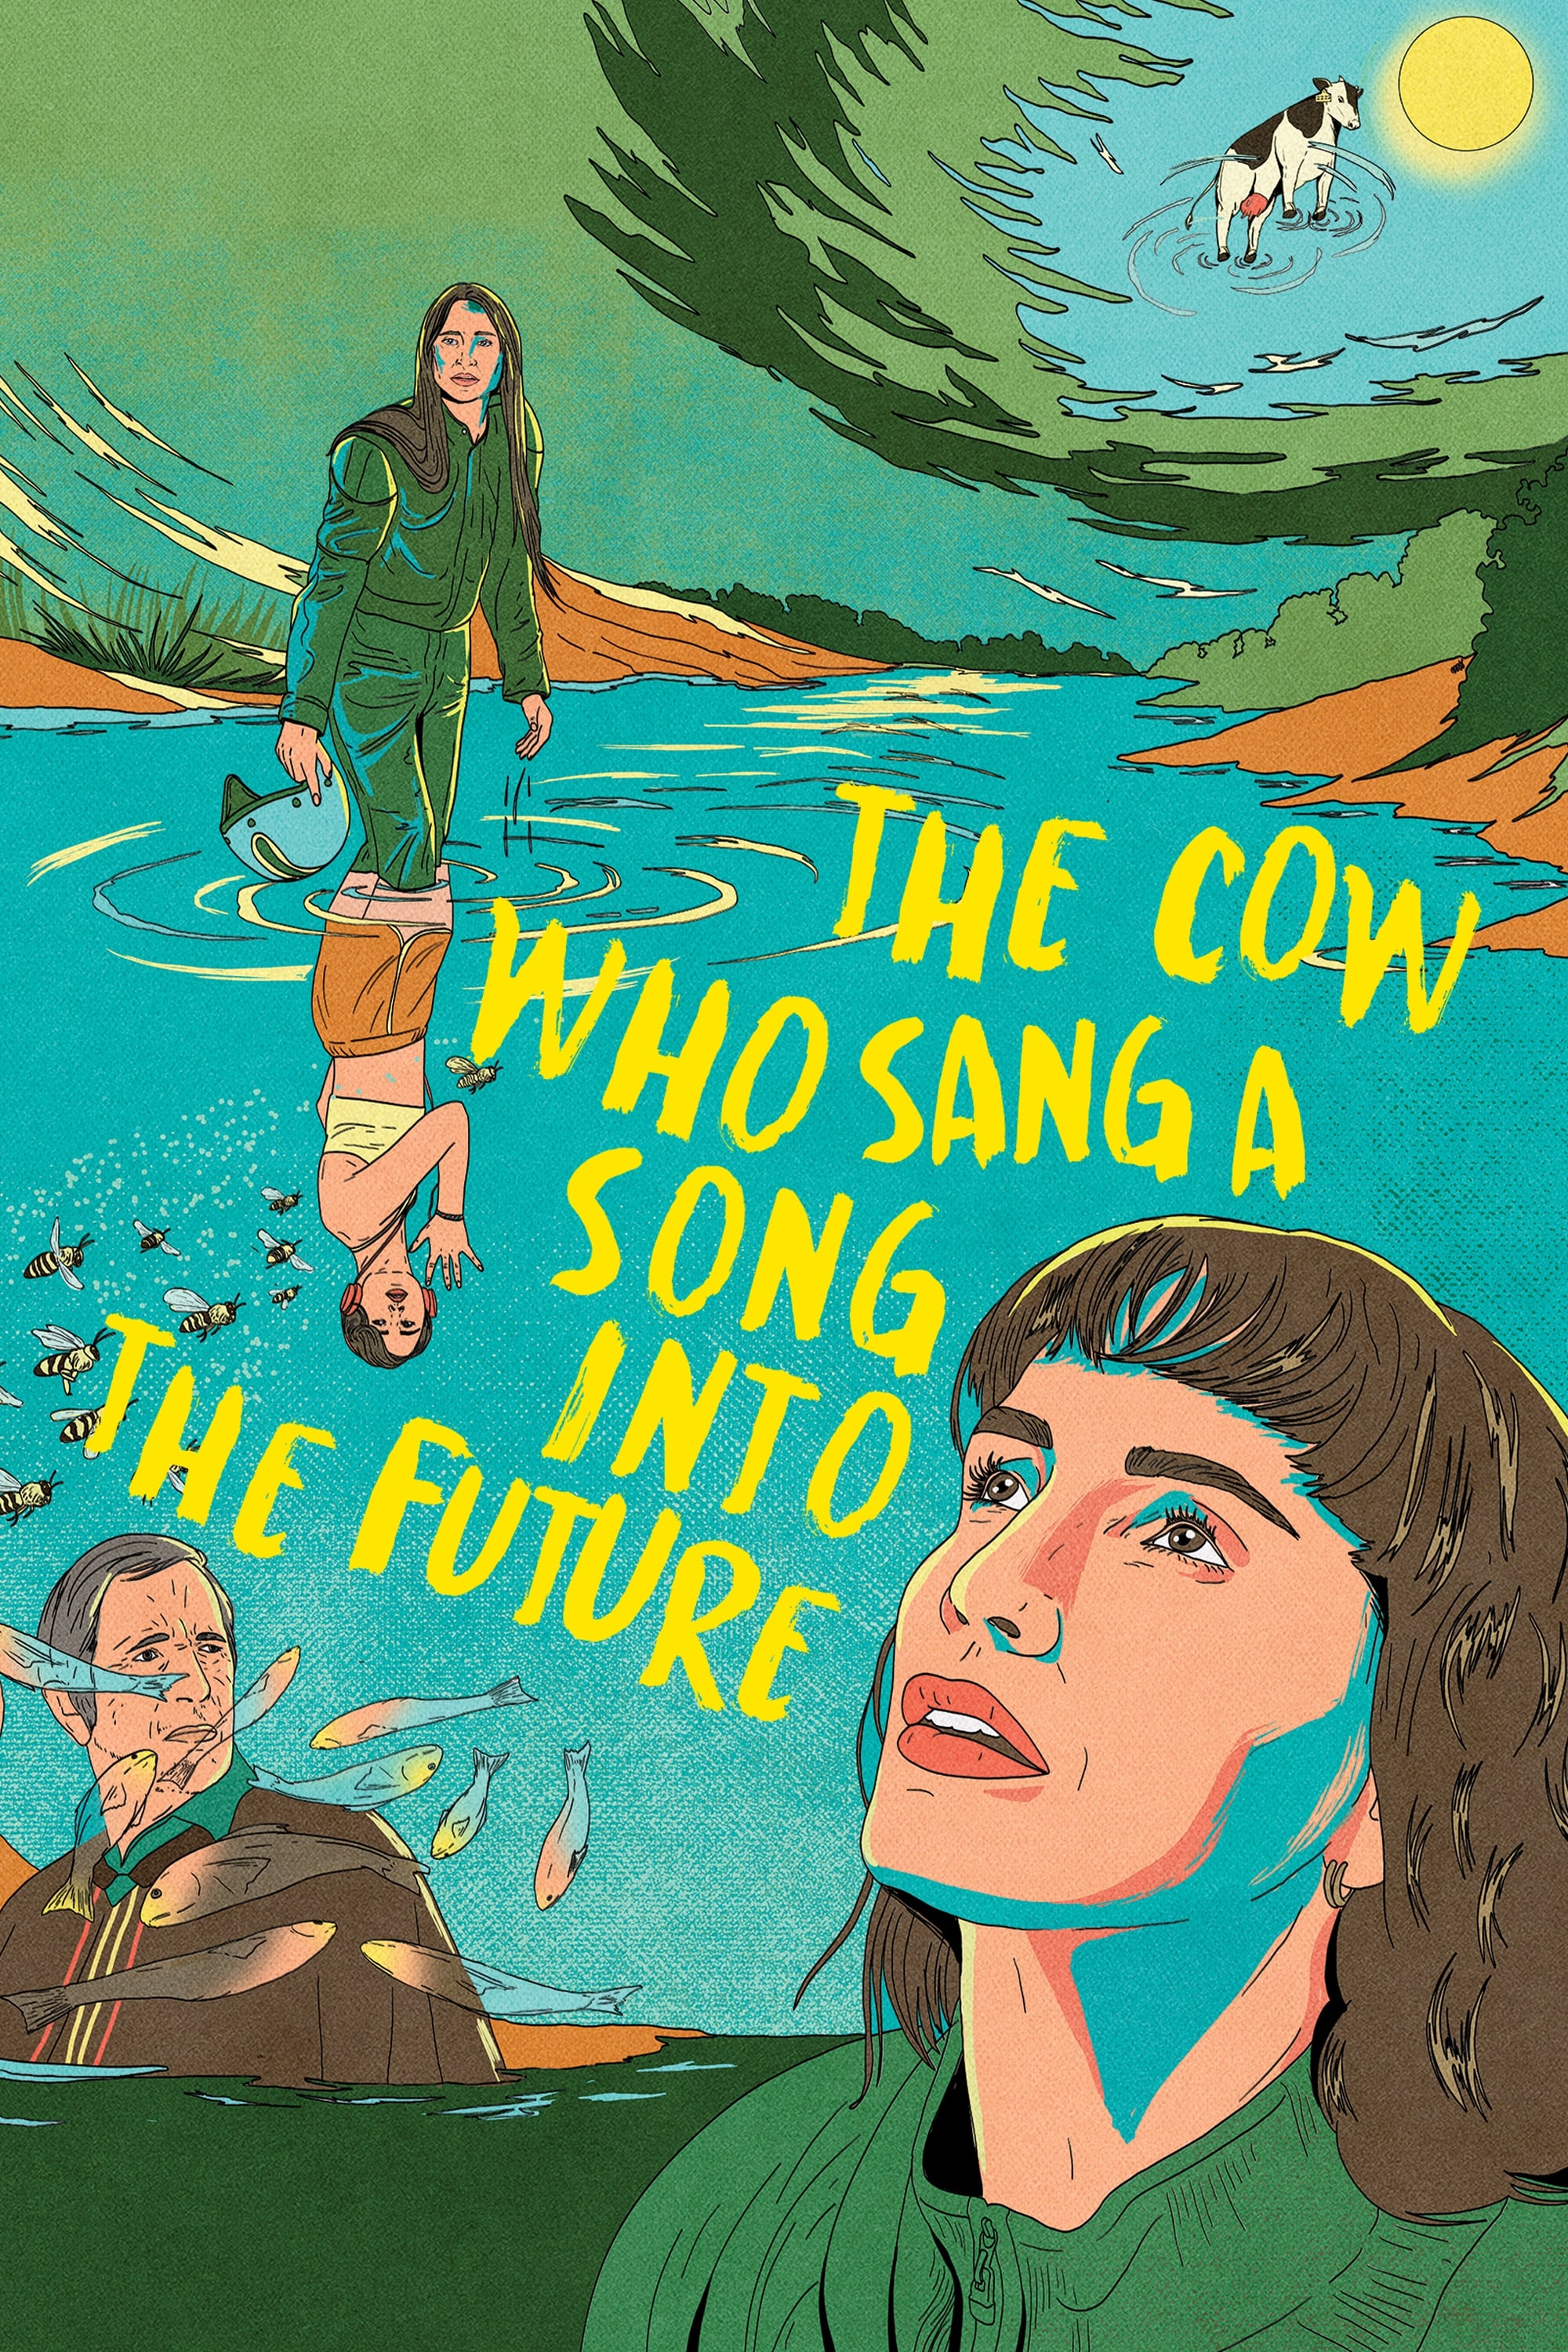 La vaca que cantó una canción hacia el futuro